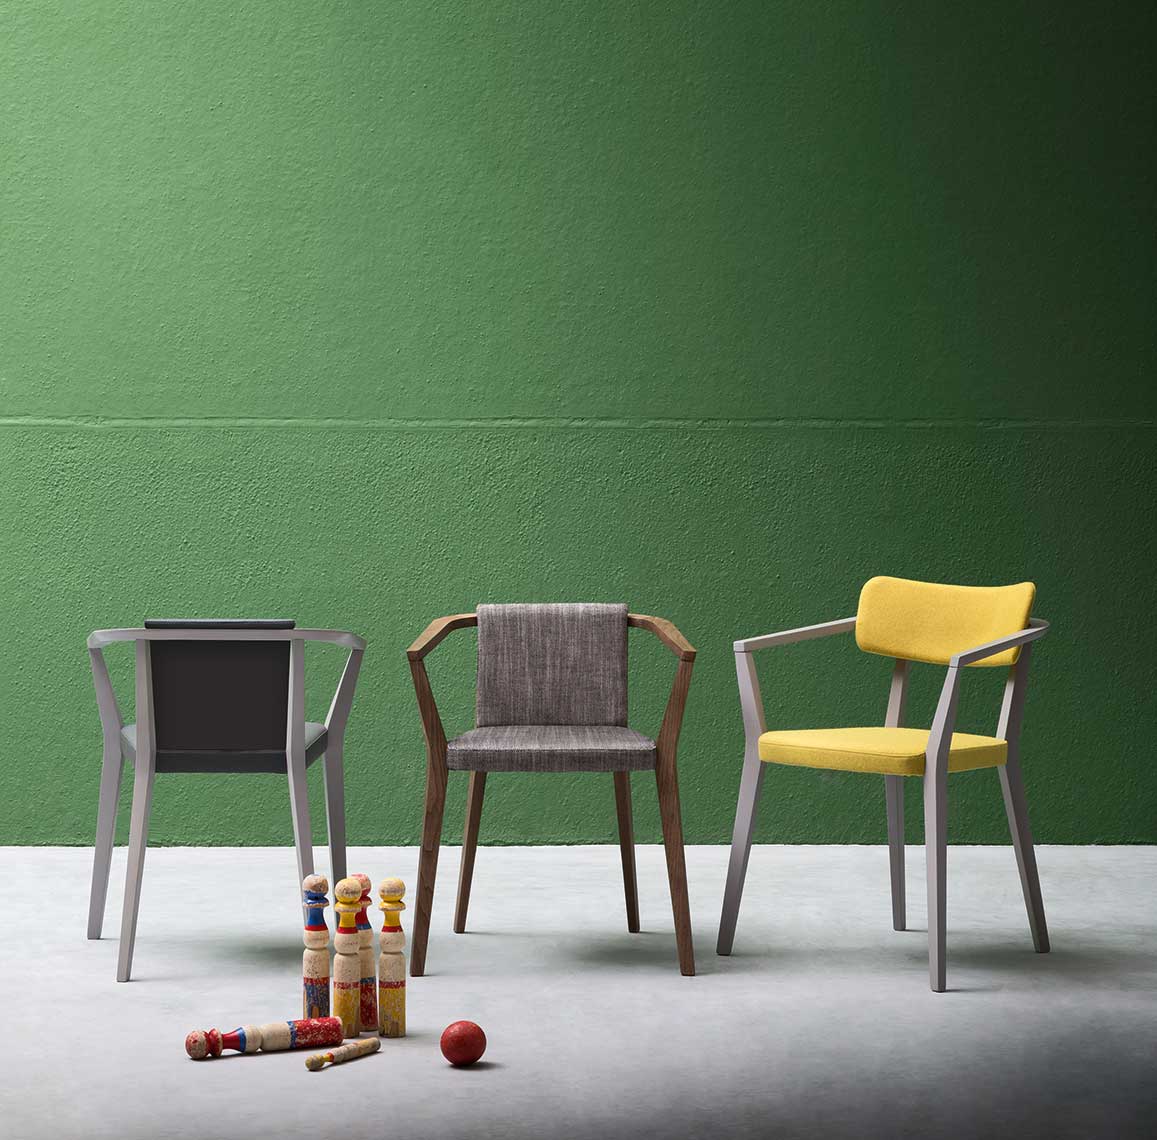 Az olasz tervezésű, minőségi alapanyagokból készült Viky modern szék háromféle eltérő verzióban is kapható.